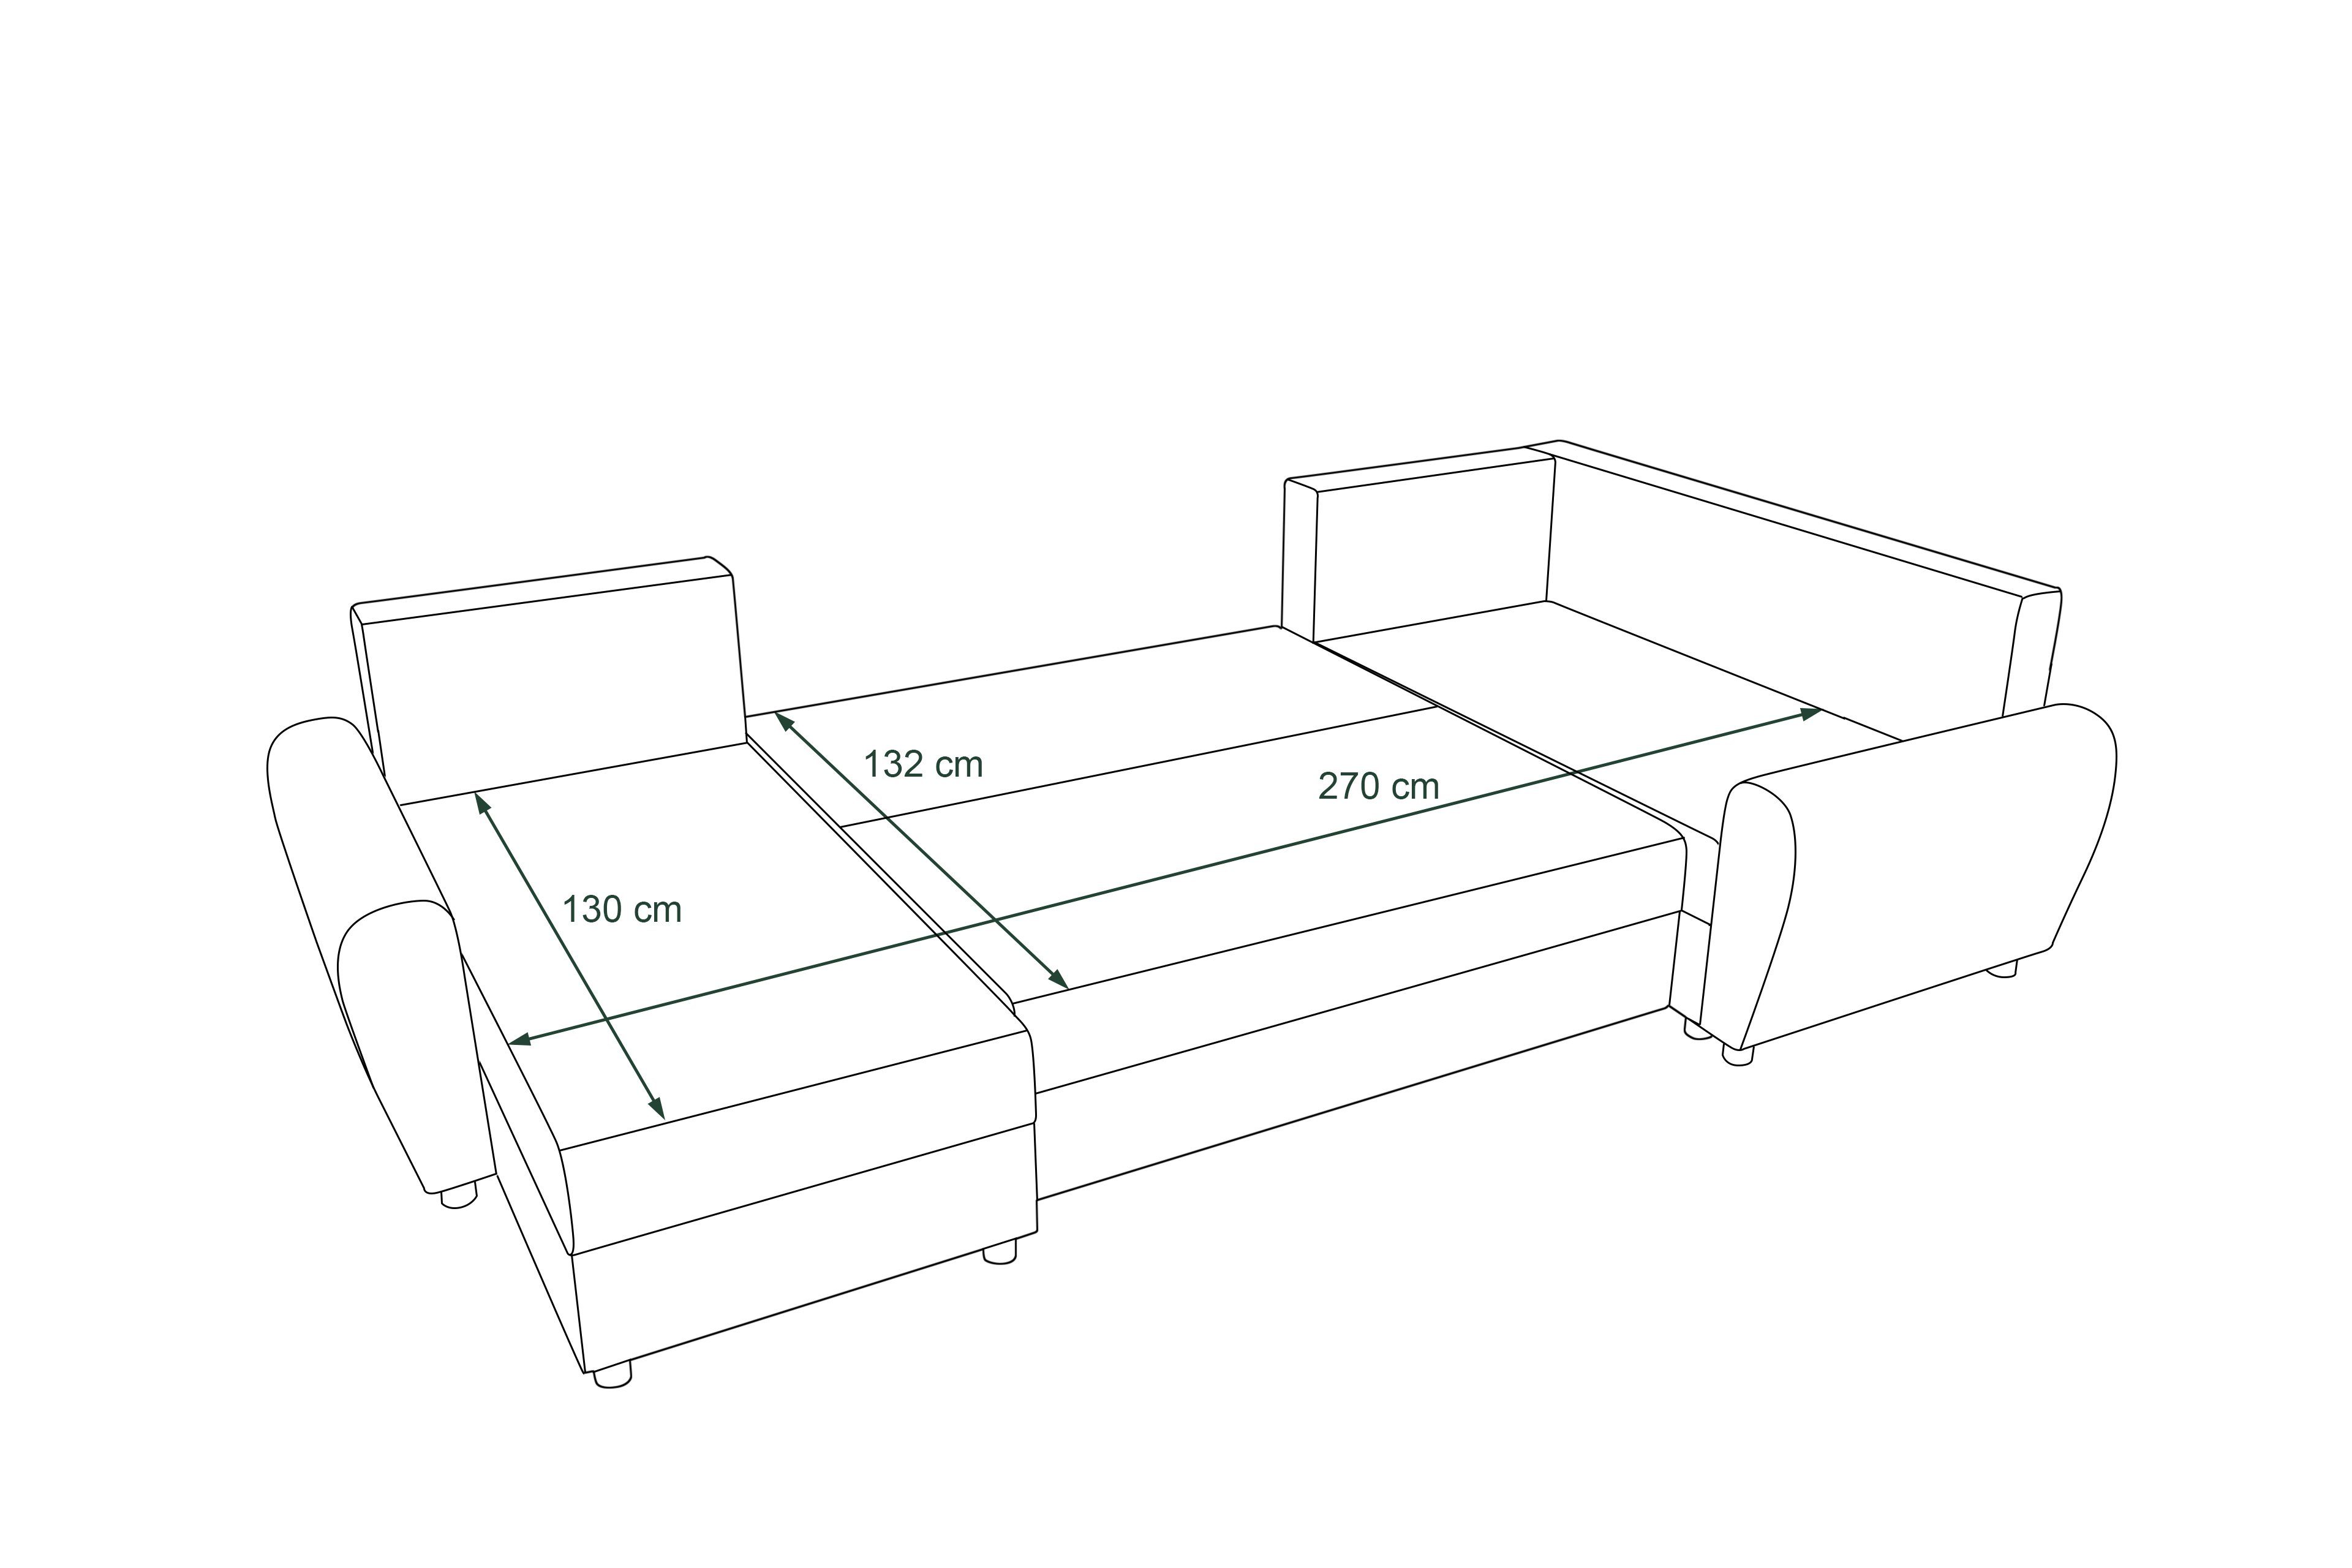 mit Sofa, Haven, U-Form, Design Modern mit Bettkasten, Bettfunktion, Wohnlandschaft Stylefy Sitzkomfort, Eckcouch,